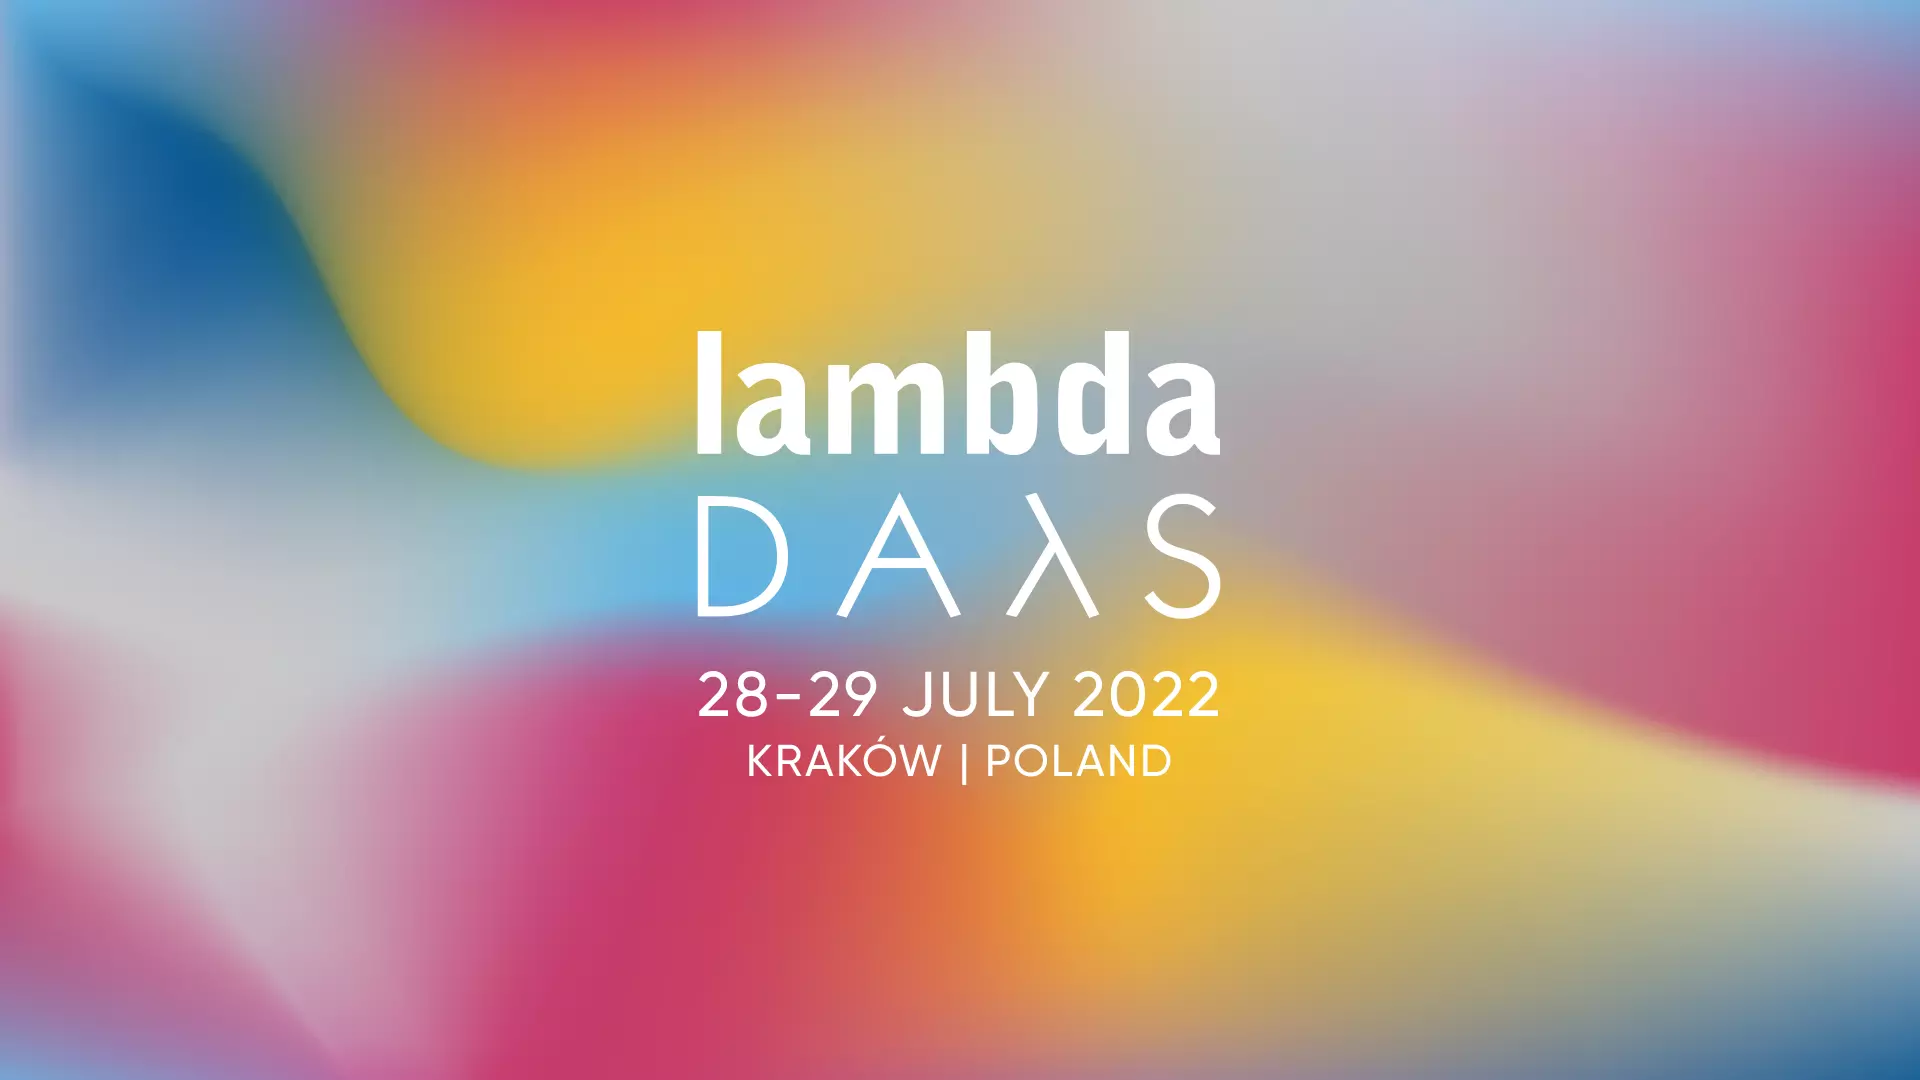 Meet us on LambdaDays 2022